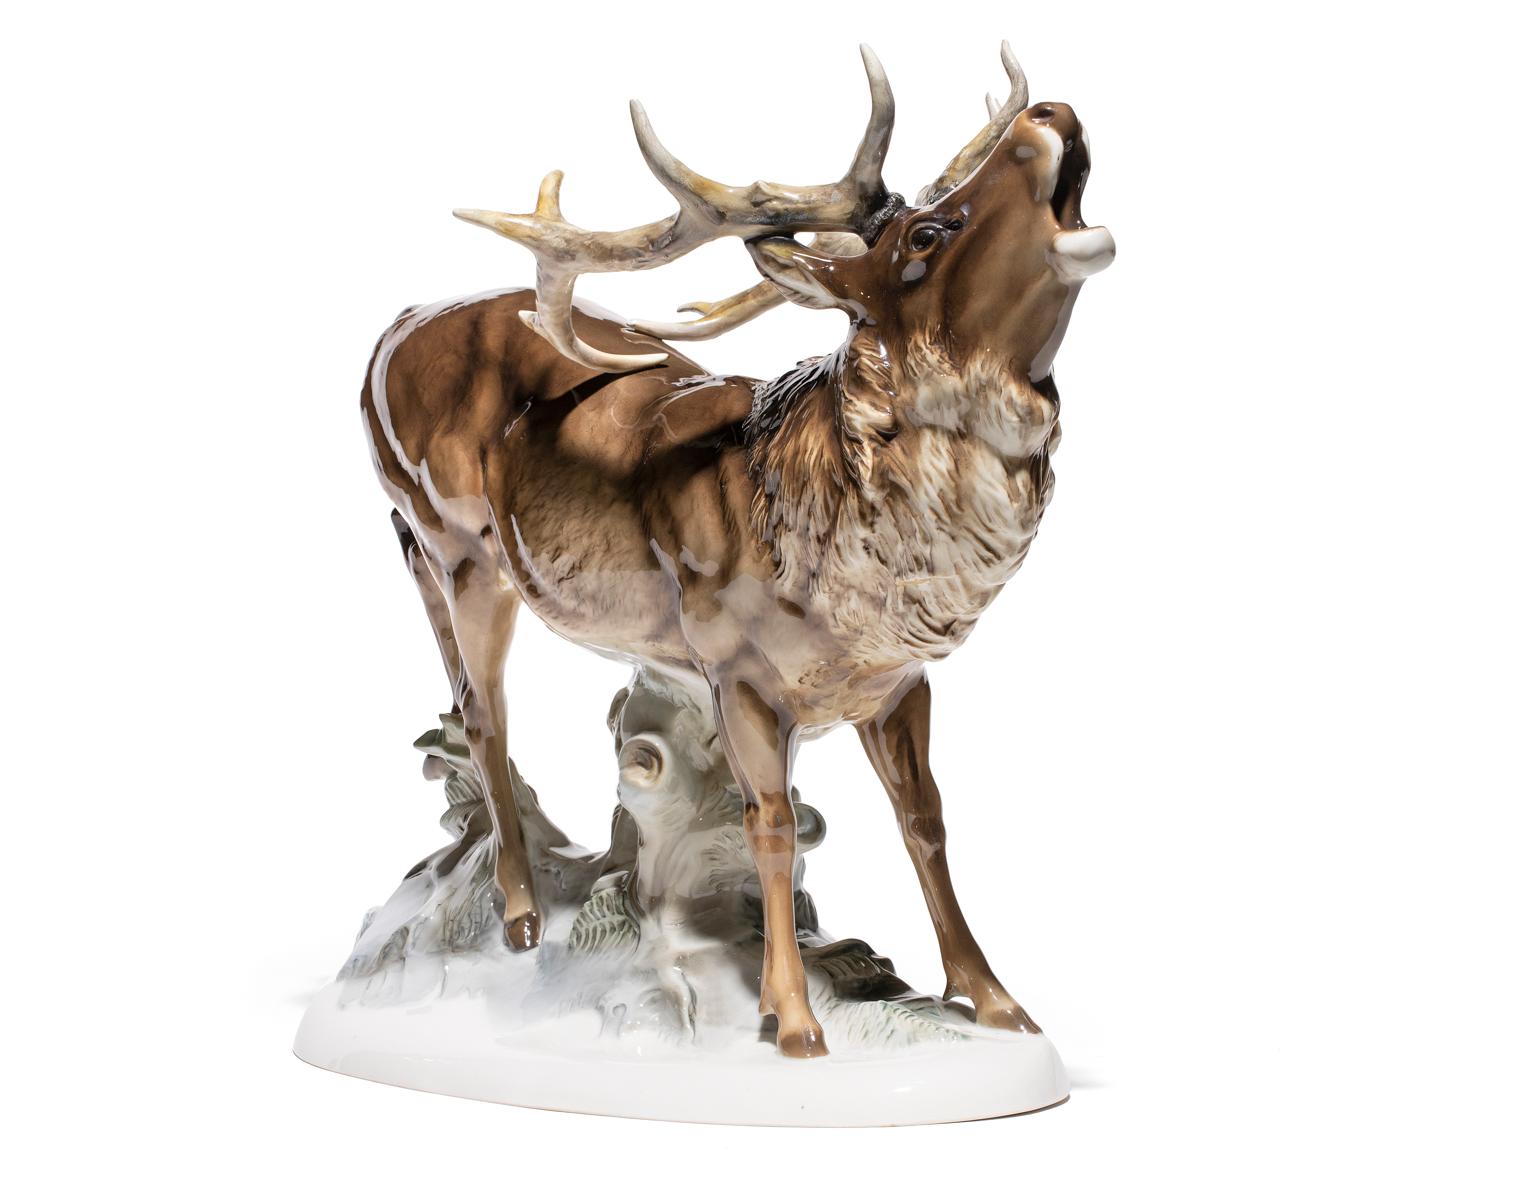 La porcelaine Stag Deer a été fabriquée par le Hutschenreuther - Selb - Kunstabteilung (atelier d'art). Le dessous porte les marques authentiques de la société Hutschenreuther-Selb. Un cerf est un mâle adulte et mature. Celui-ci beugle, peut-être